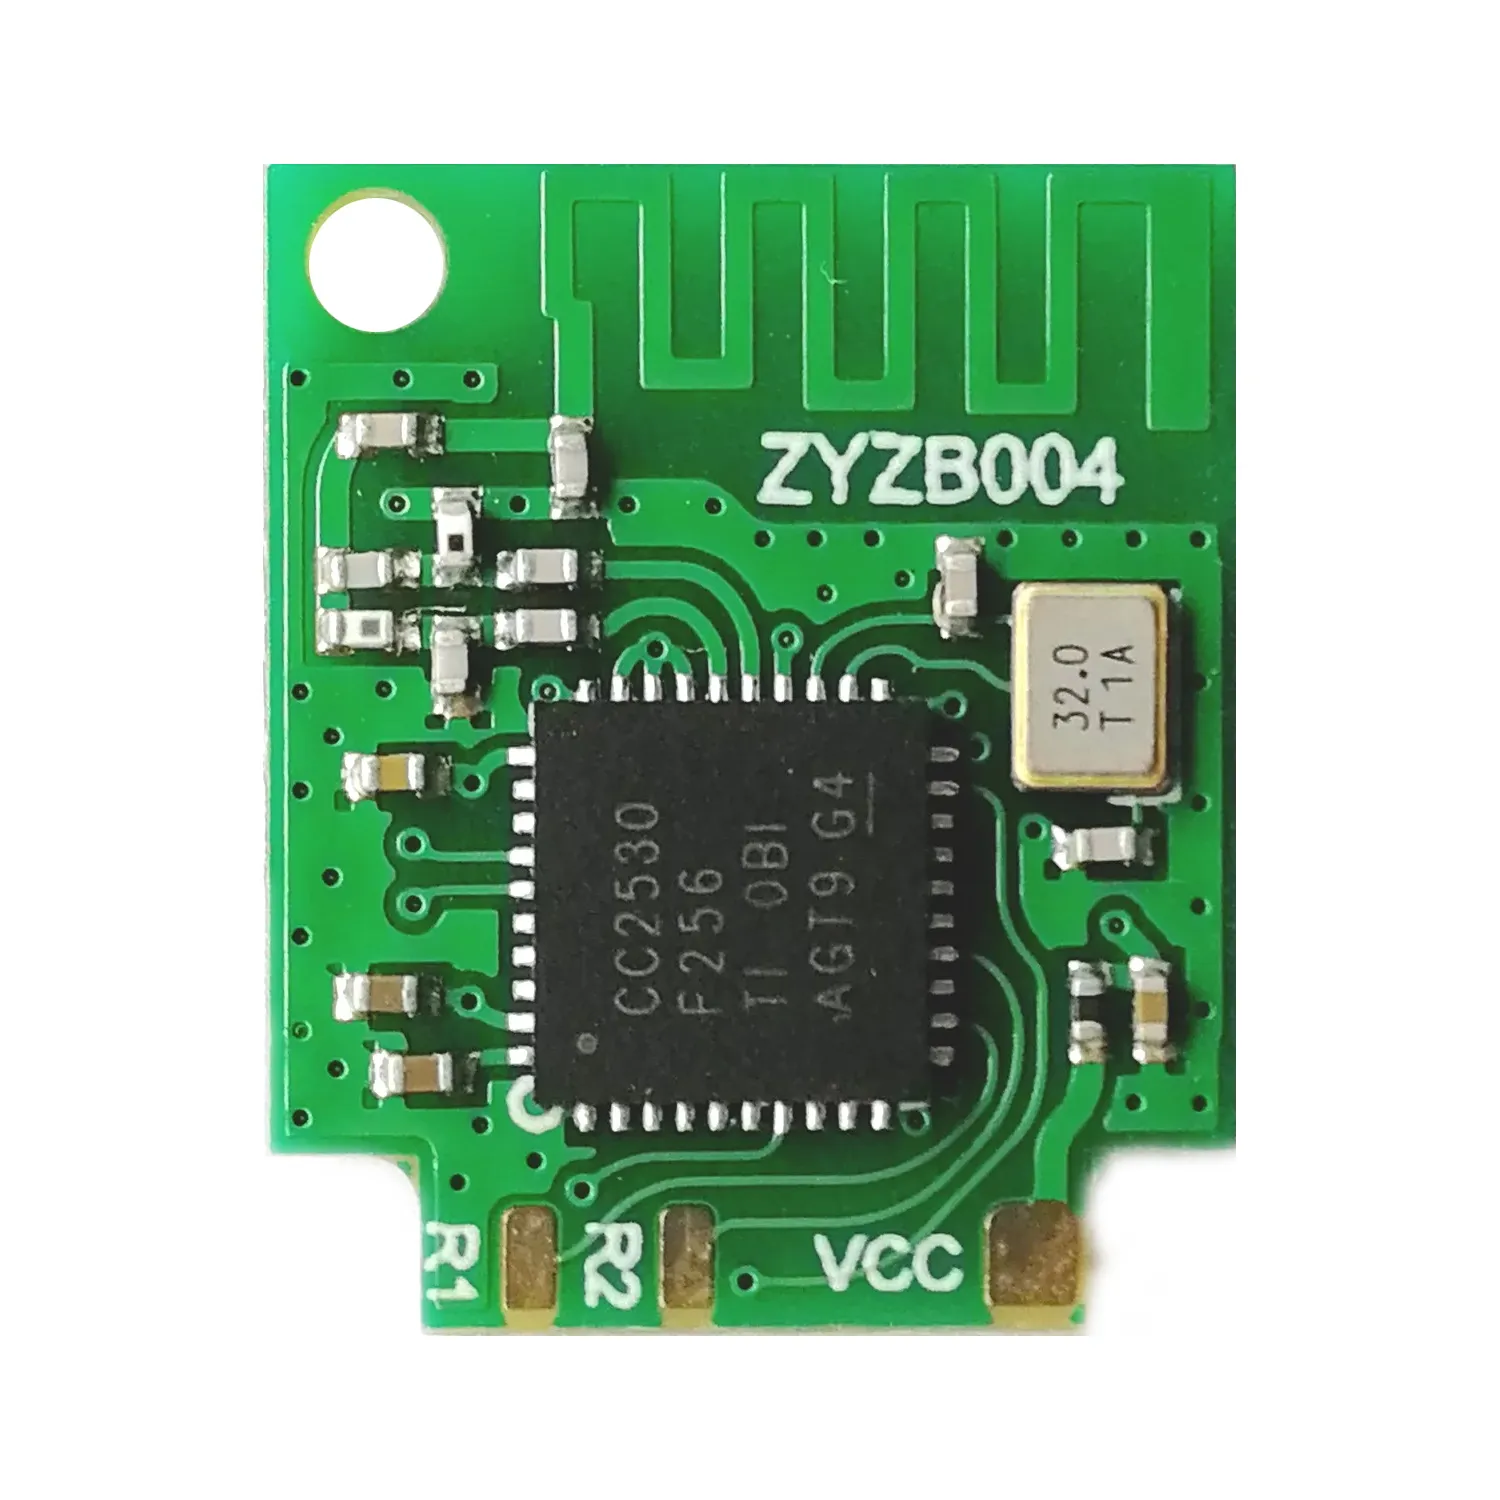 eWeLink ZigBee CC2530 Multifunction Switch Module